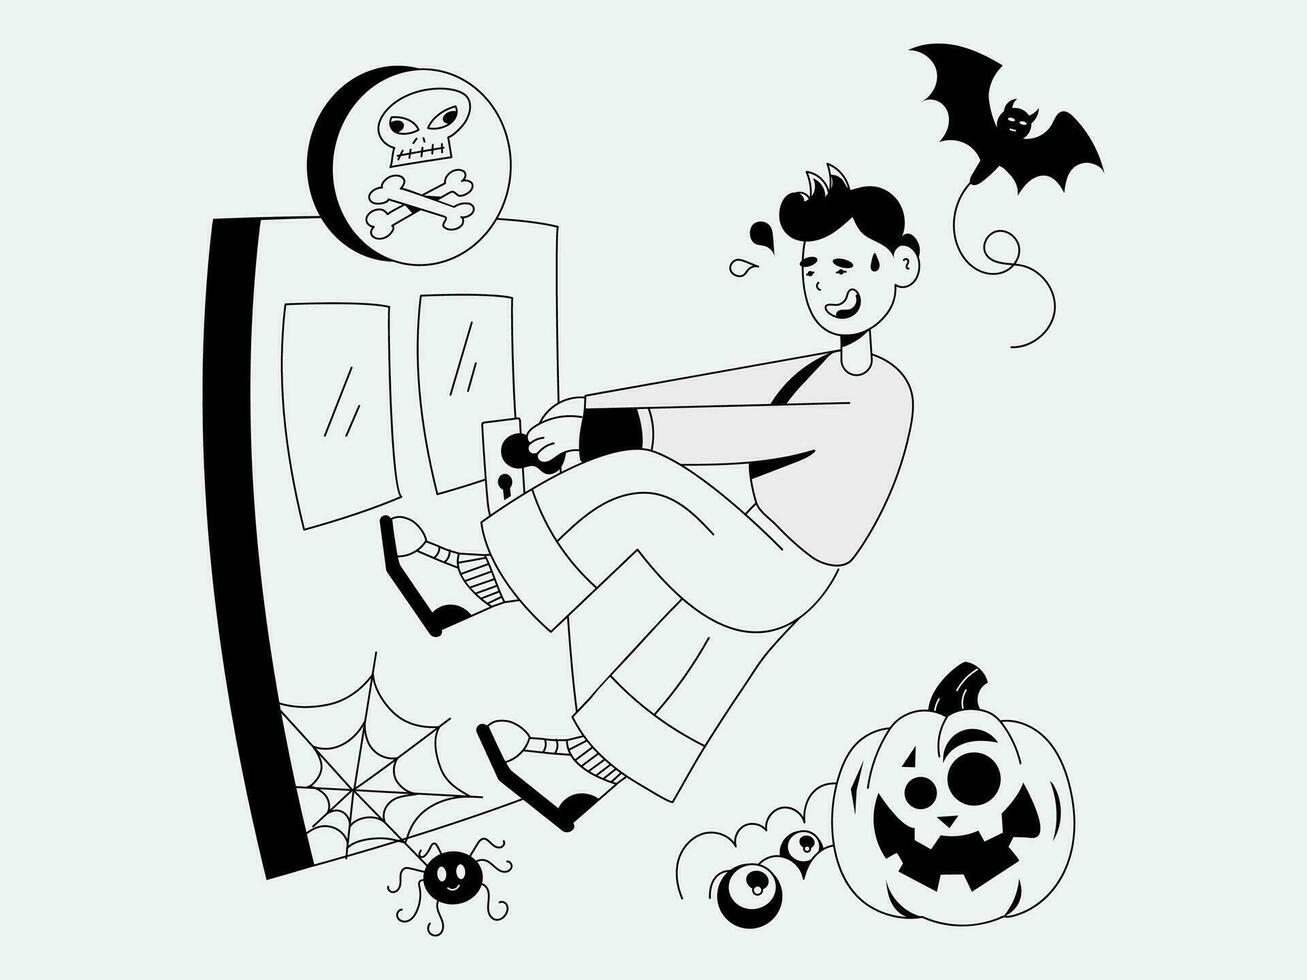 bunt halloween illustration packa läskigt samling vektor